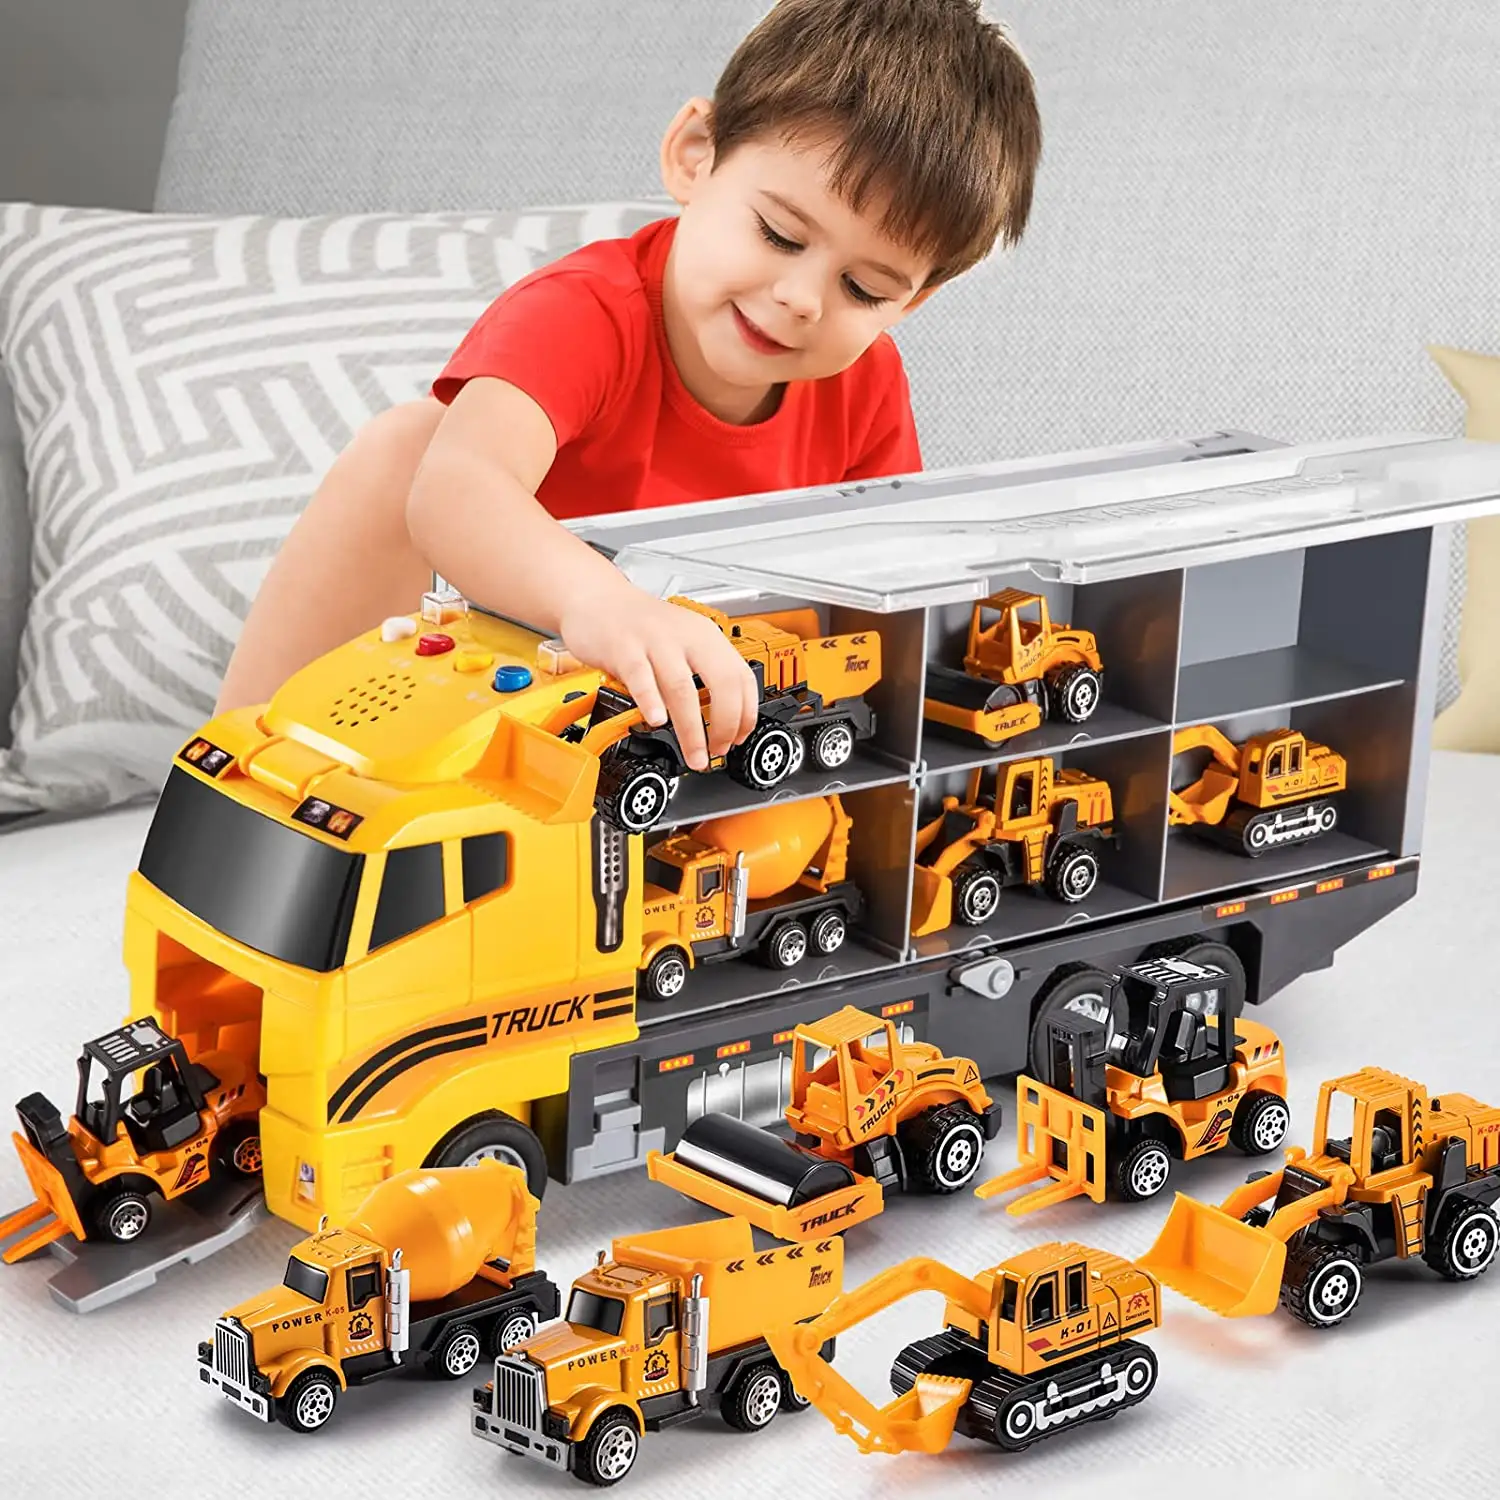 Amazon toy Vehicles